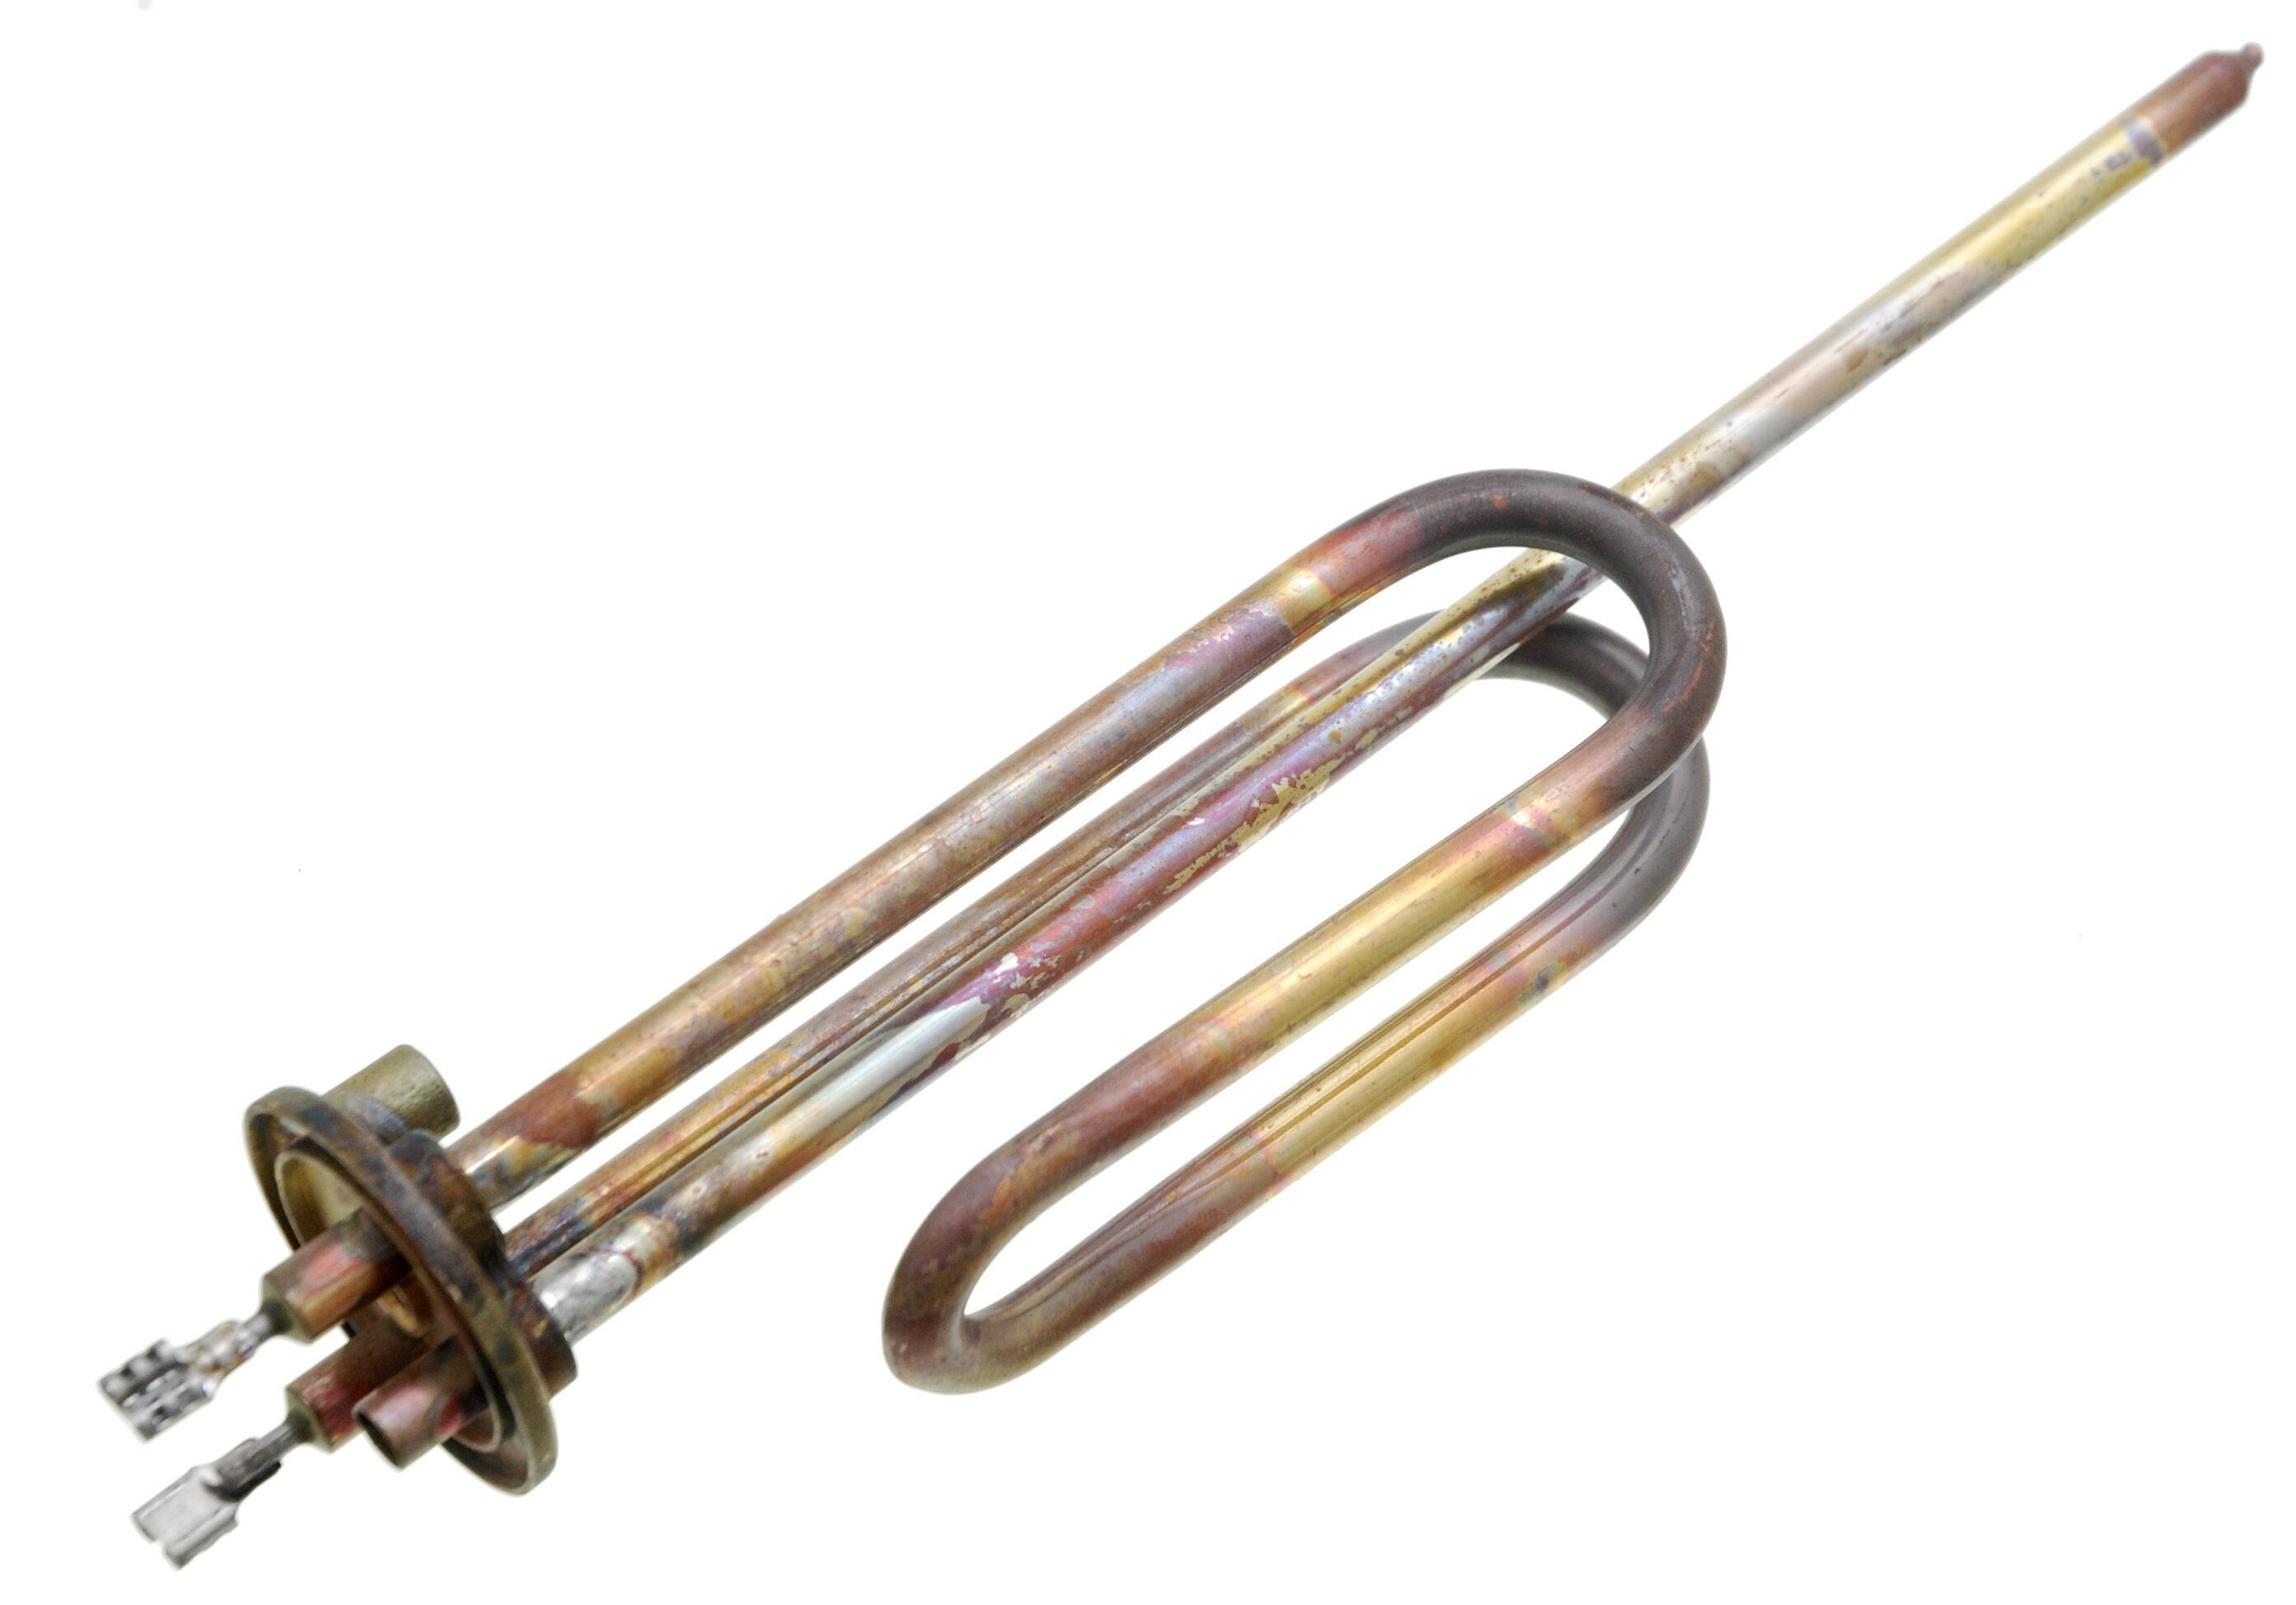 ТЭН (нагреватель) водонагревателя 1500W RCA Thermowatt (медь, фланец 48 мм, M6) под овальный фланец